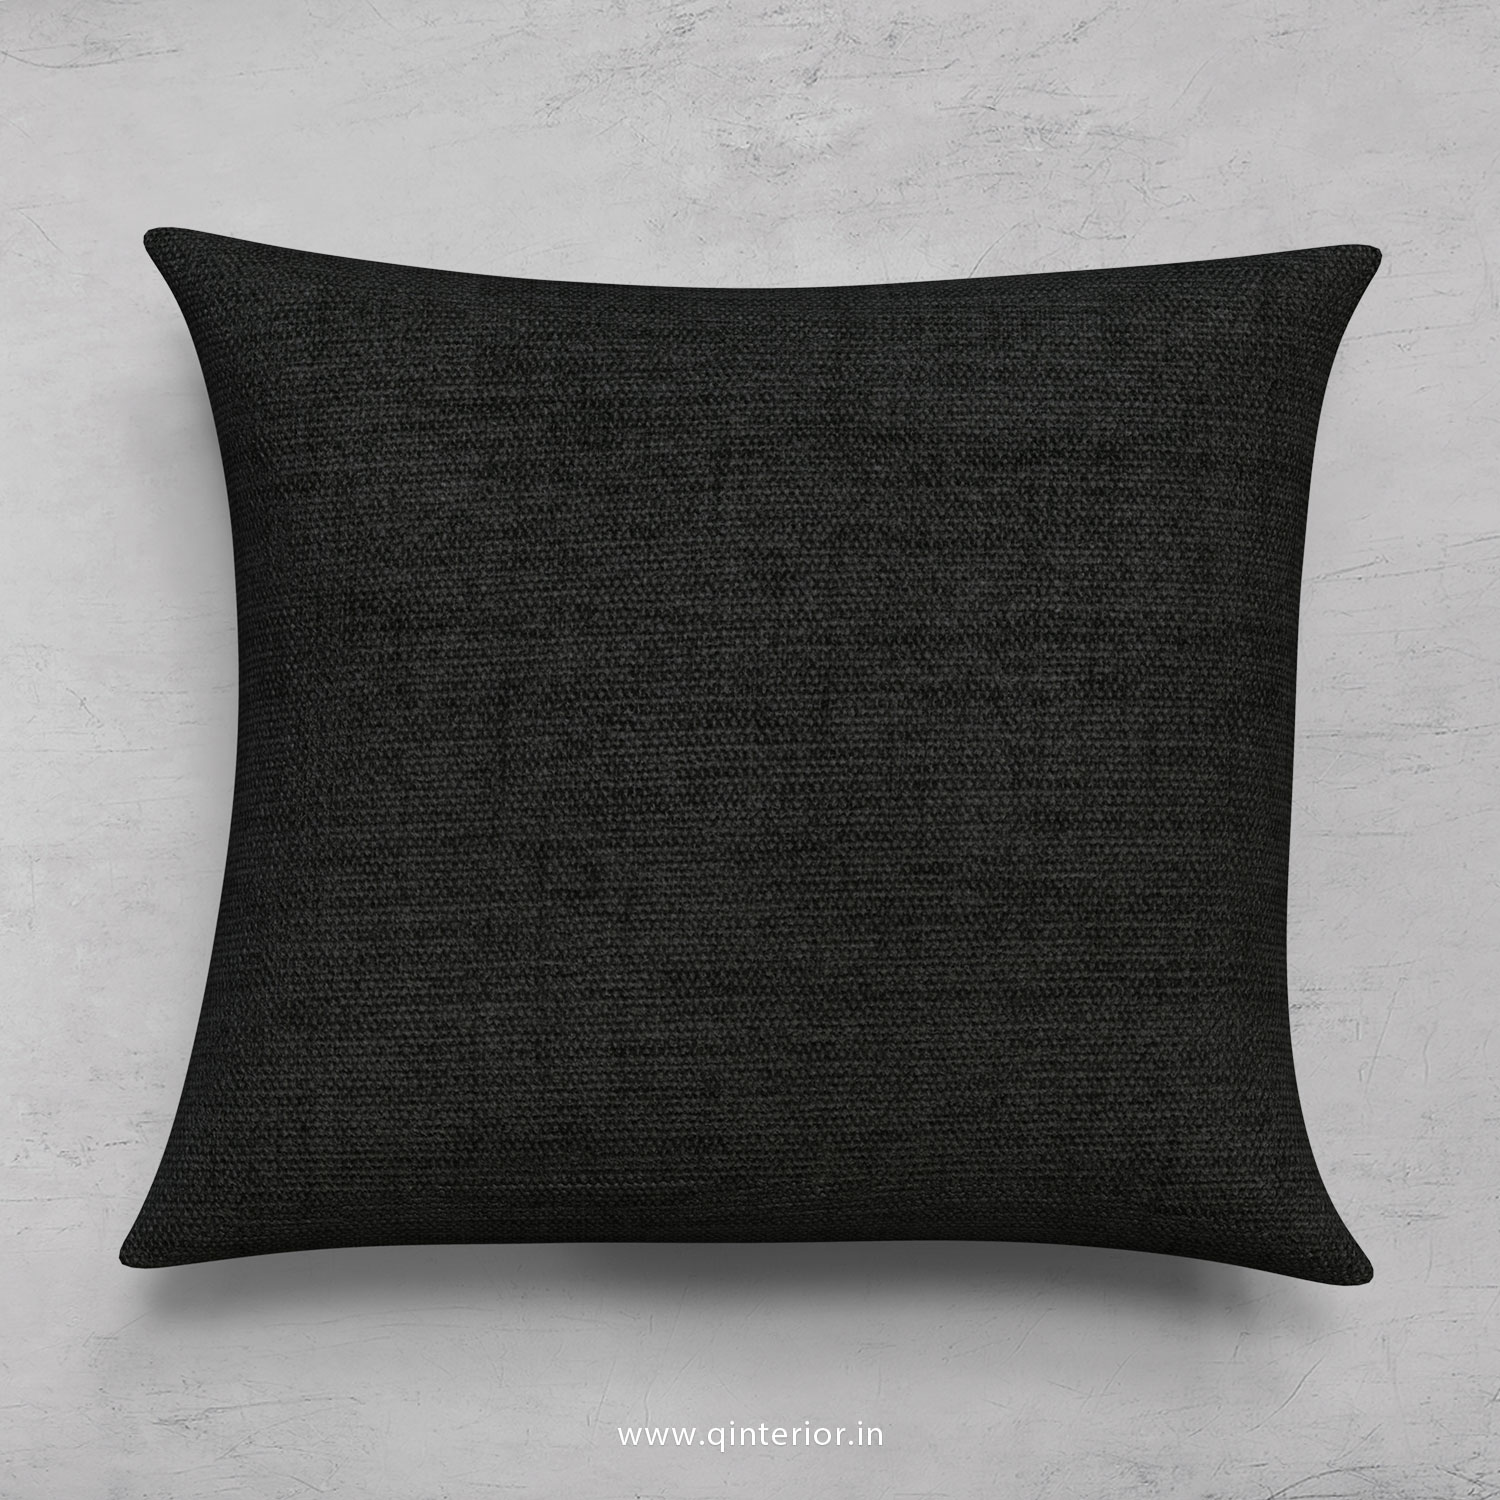 Cushion With Cushion Cover in Jacquard- CUS001 JQ20